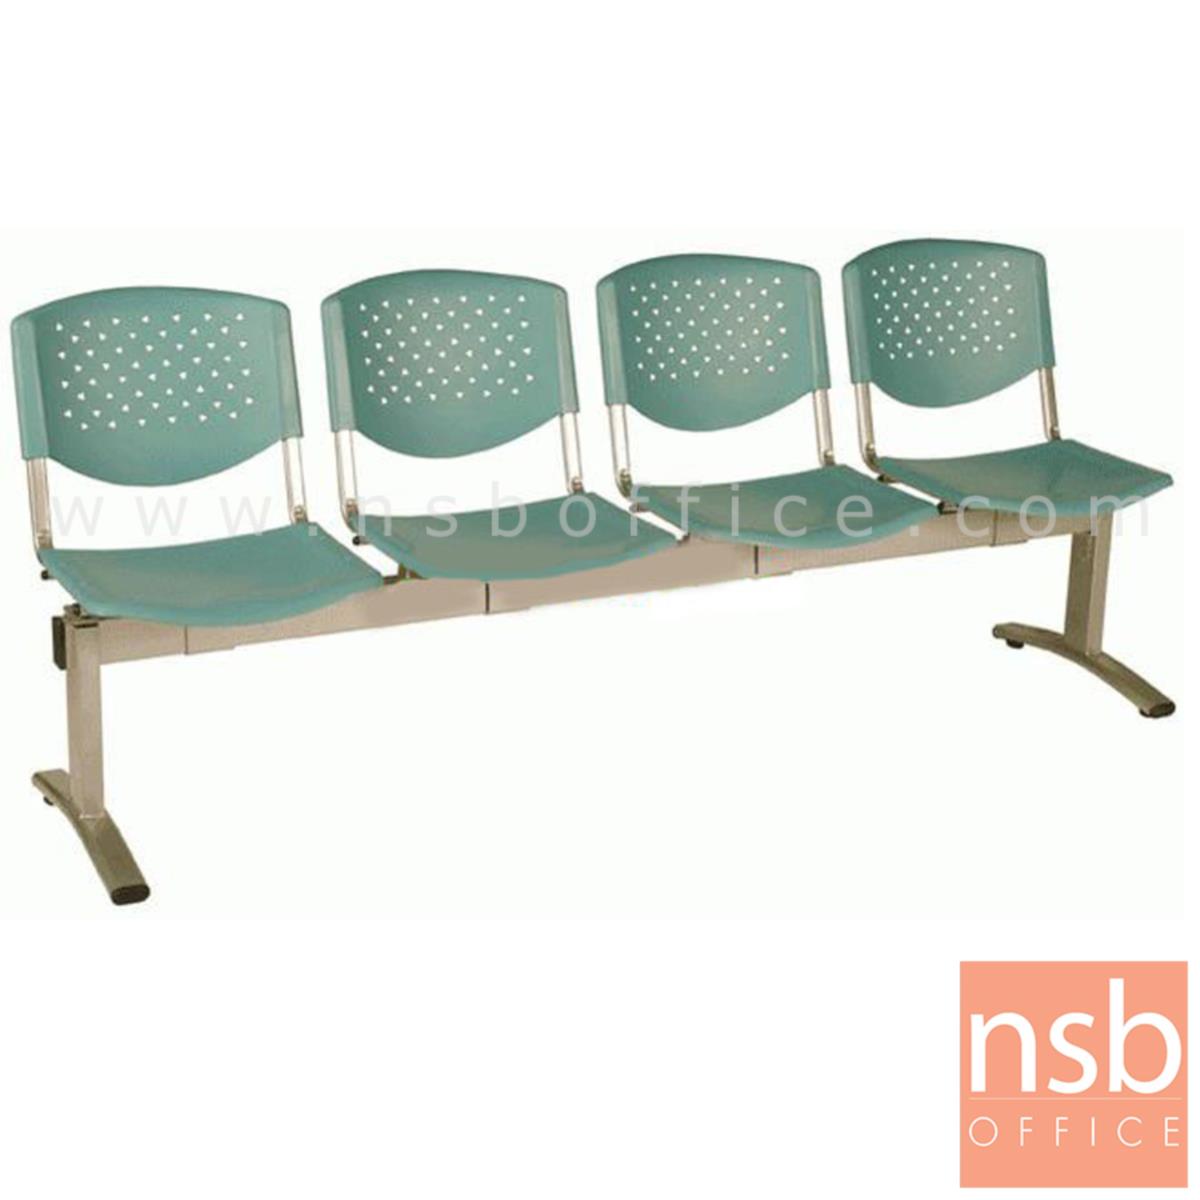 B06A054:เก้าอี้นั่งคอยเฟรมโพลี่ รุ่น B046 2 ,3 ,4 ที่นั่ง ขนาด 99W ,149W ,202W cm. ขาเหล็ก